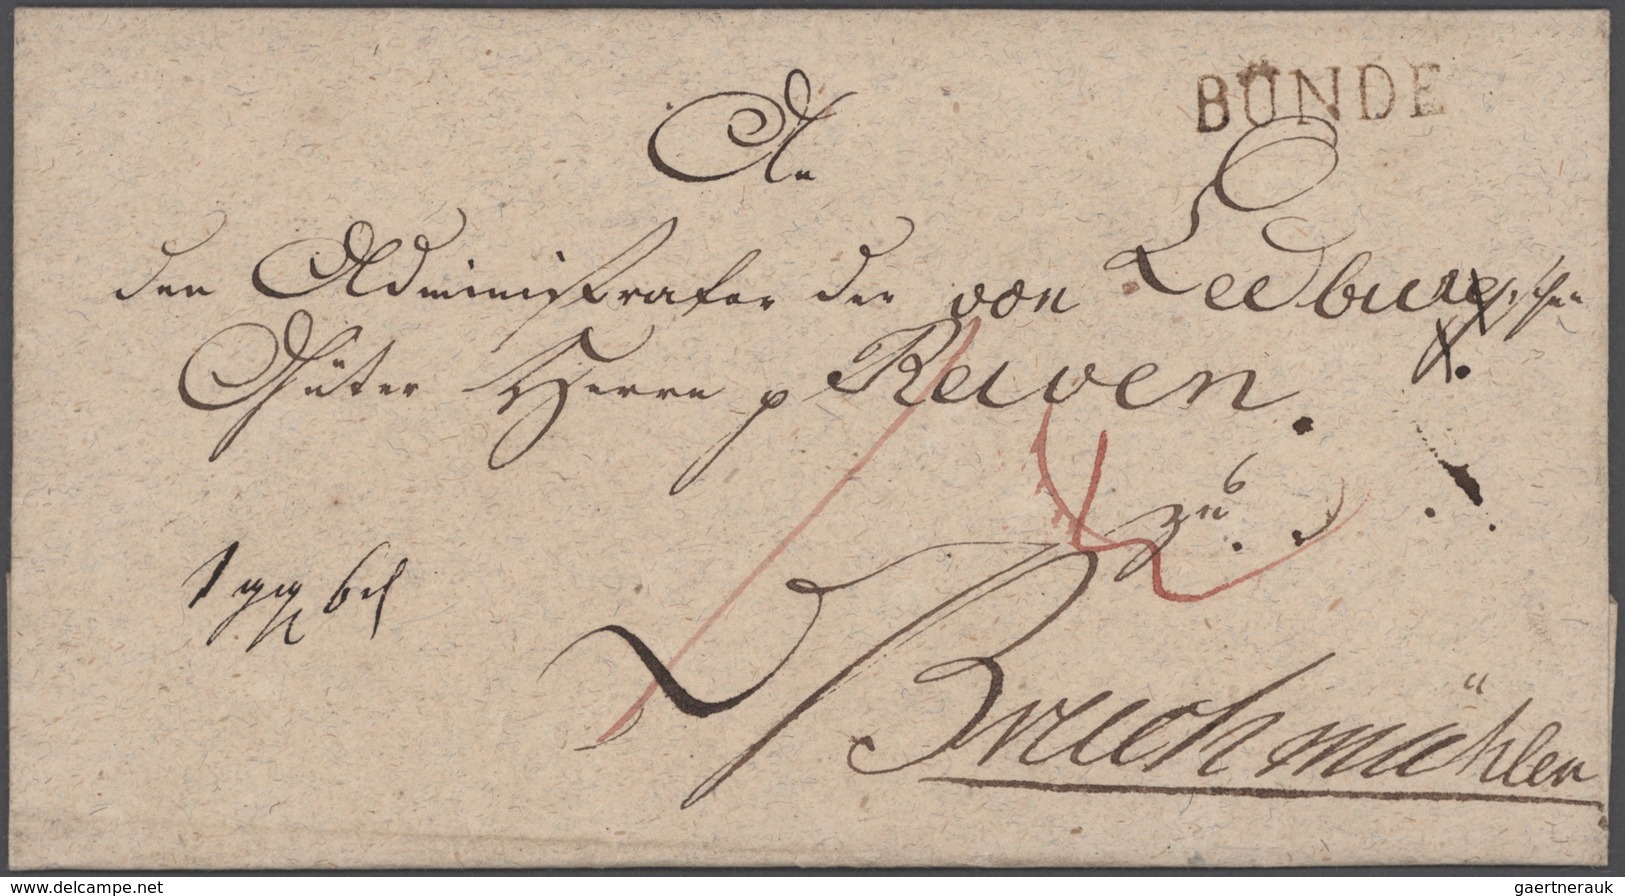 Preußen - Marken und Briefe: 1736/1890, Grafschaft Ravensberg, Sammlung von Ortsstempel u. sonstigen